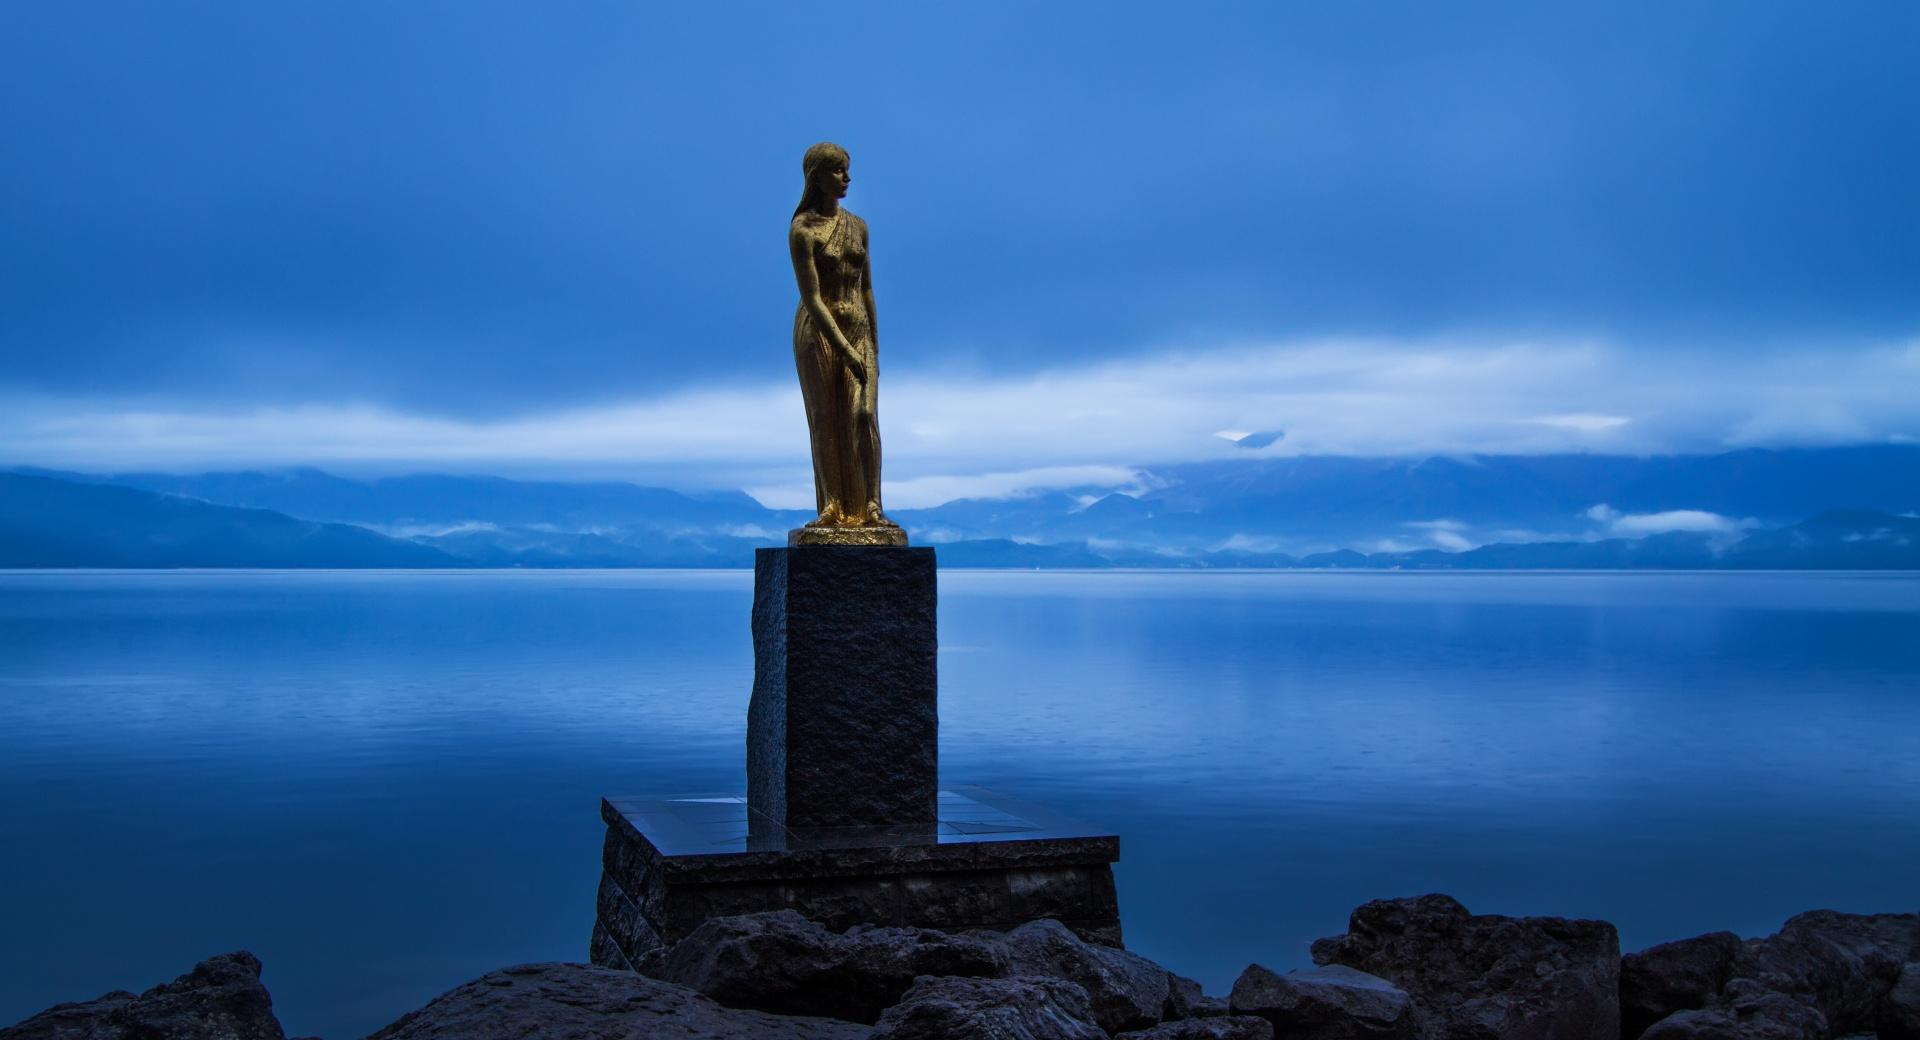 Statue of Tatsuko, Lake Tazawa at 1280 x 960 size wallpapers HD quality